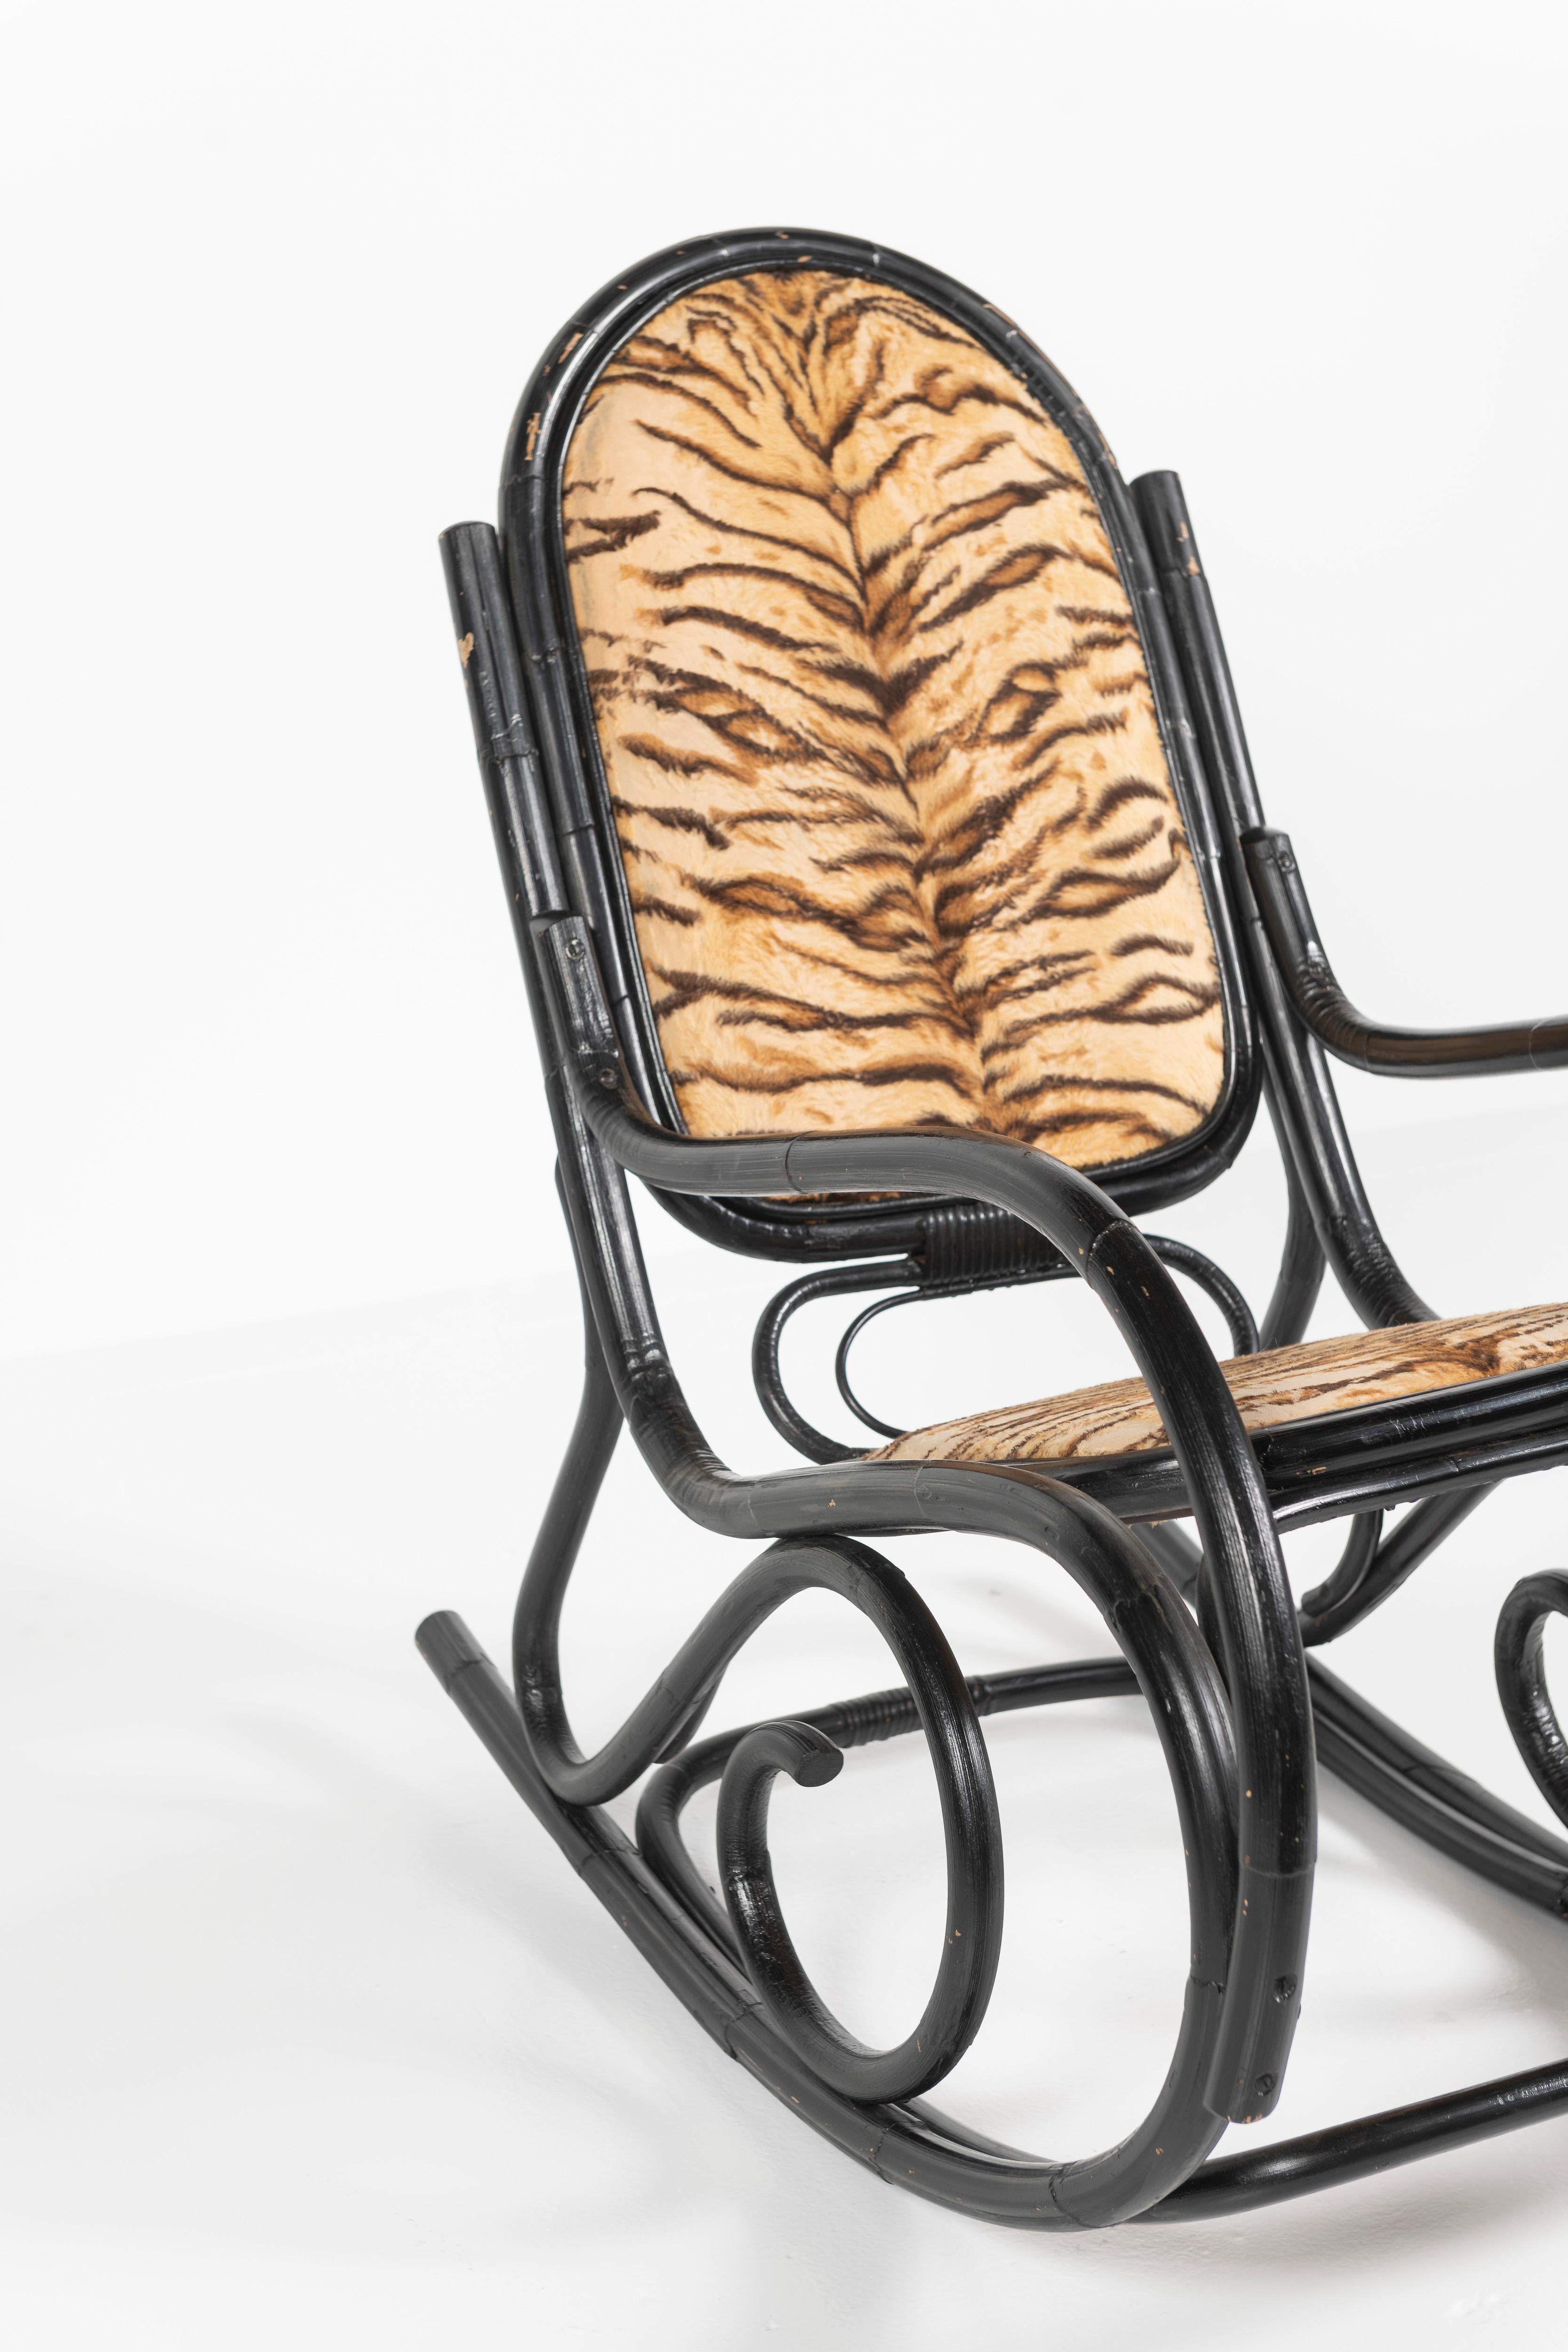 Dieser klassische Bugholz-Schaukelstuhl aus schwarz lackiertem Bambus wird Thonet aus den 1920er Jahren zugeschrieben. Das Innere der Sitze und die Rückenlehne wurden mit einem Stoff mit Tigermuster gepolstert, der wahrscheinlich die ursprüngliche